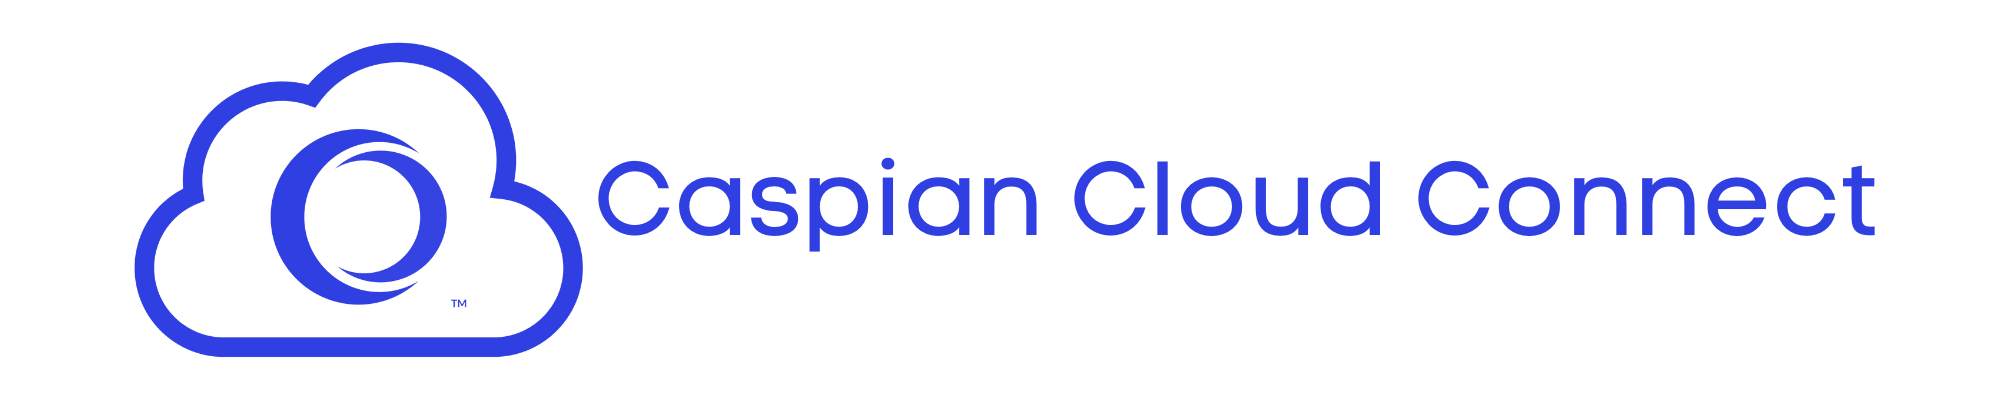 Caspian Cloud Connect